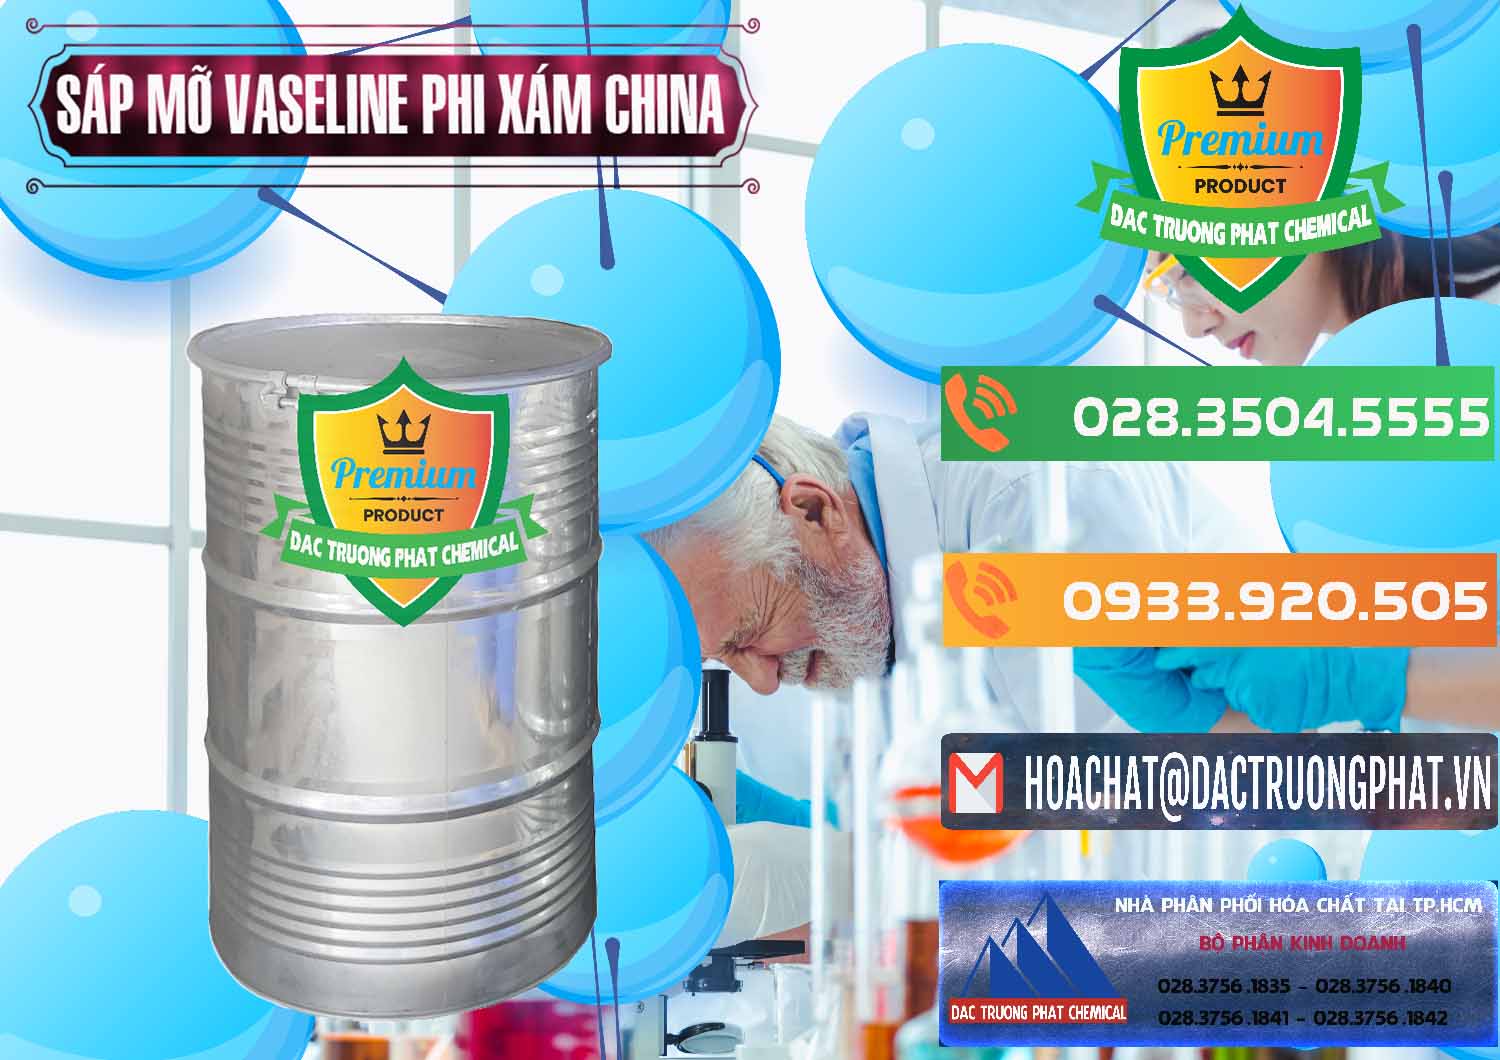 Cty kinh doanh - bán Sáp Mỡ Vaseline Phi Xám Trung Quốc China - 0291 - Công ty phân phối & cung cấp hóa chất tại TP.HCM - hoachatxulynuoc.com.vn